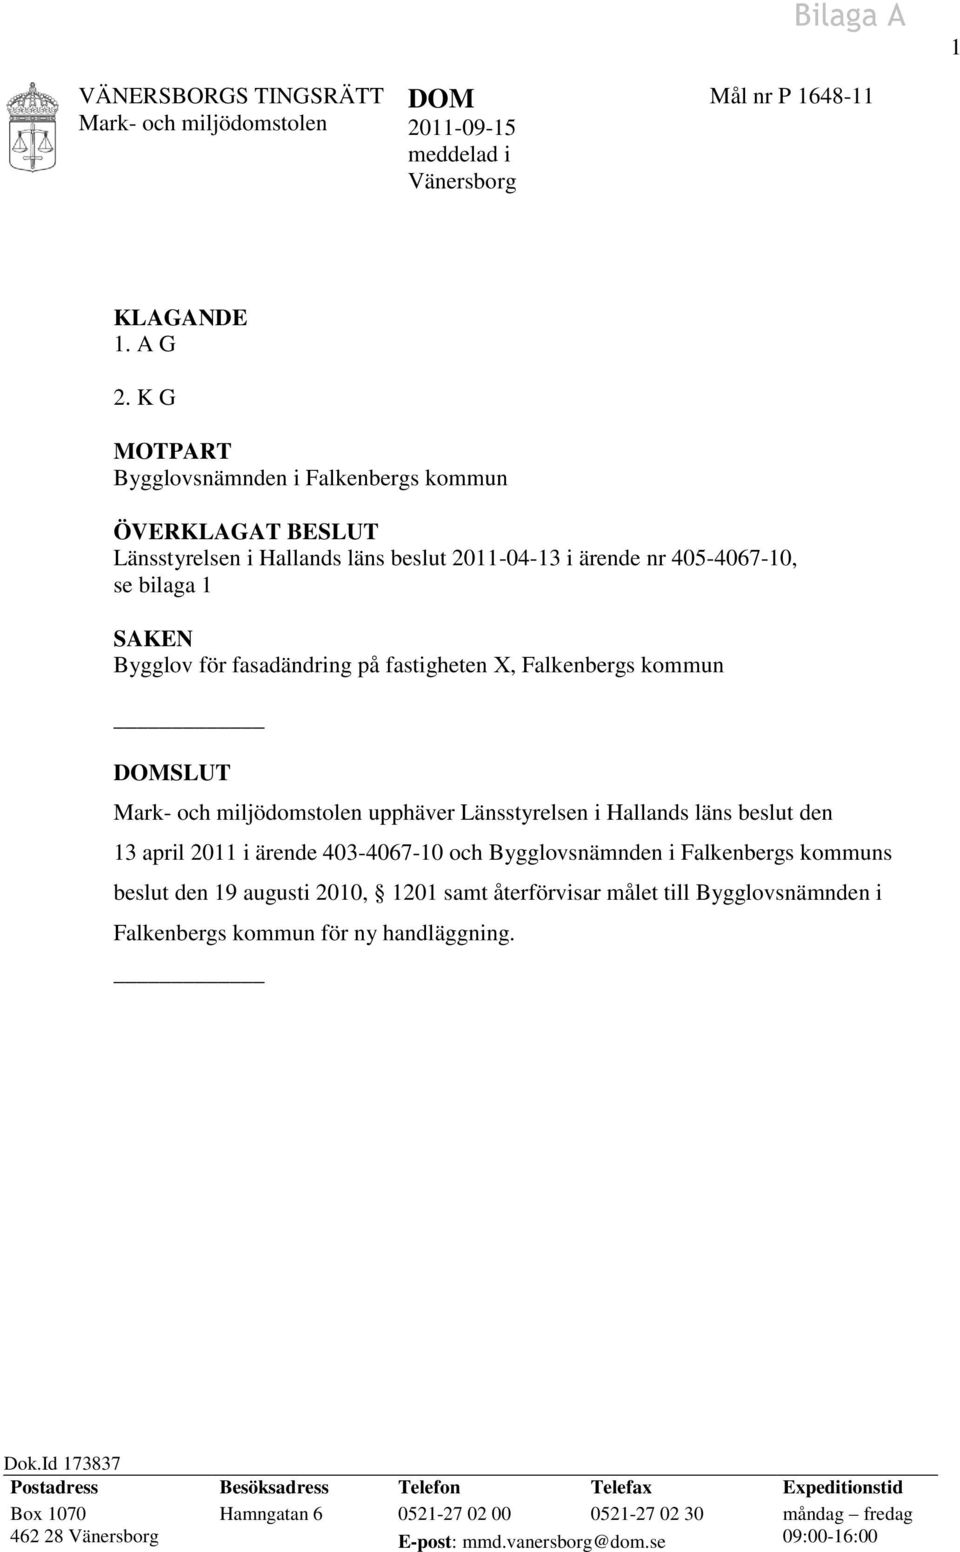 fastigheten X, Falkenbergs kommun DOMSLUT upphäver Länsstyrelsen i Hallands läns beslut den 13 april 2011 i ärende 403-4067-10 och Bygglovsnämnden i Falkenbergs kommuns beslut den 19 augusti